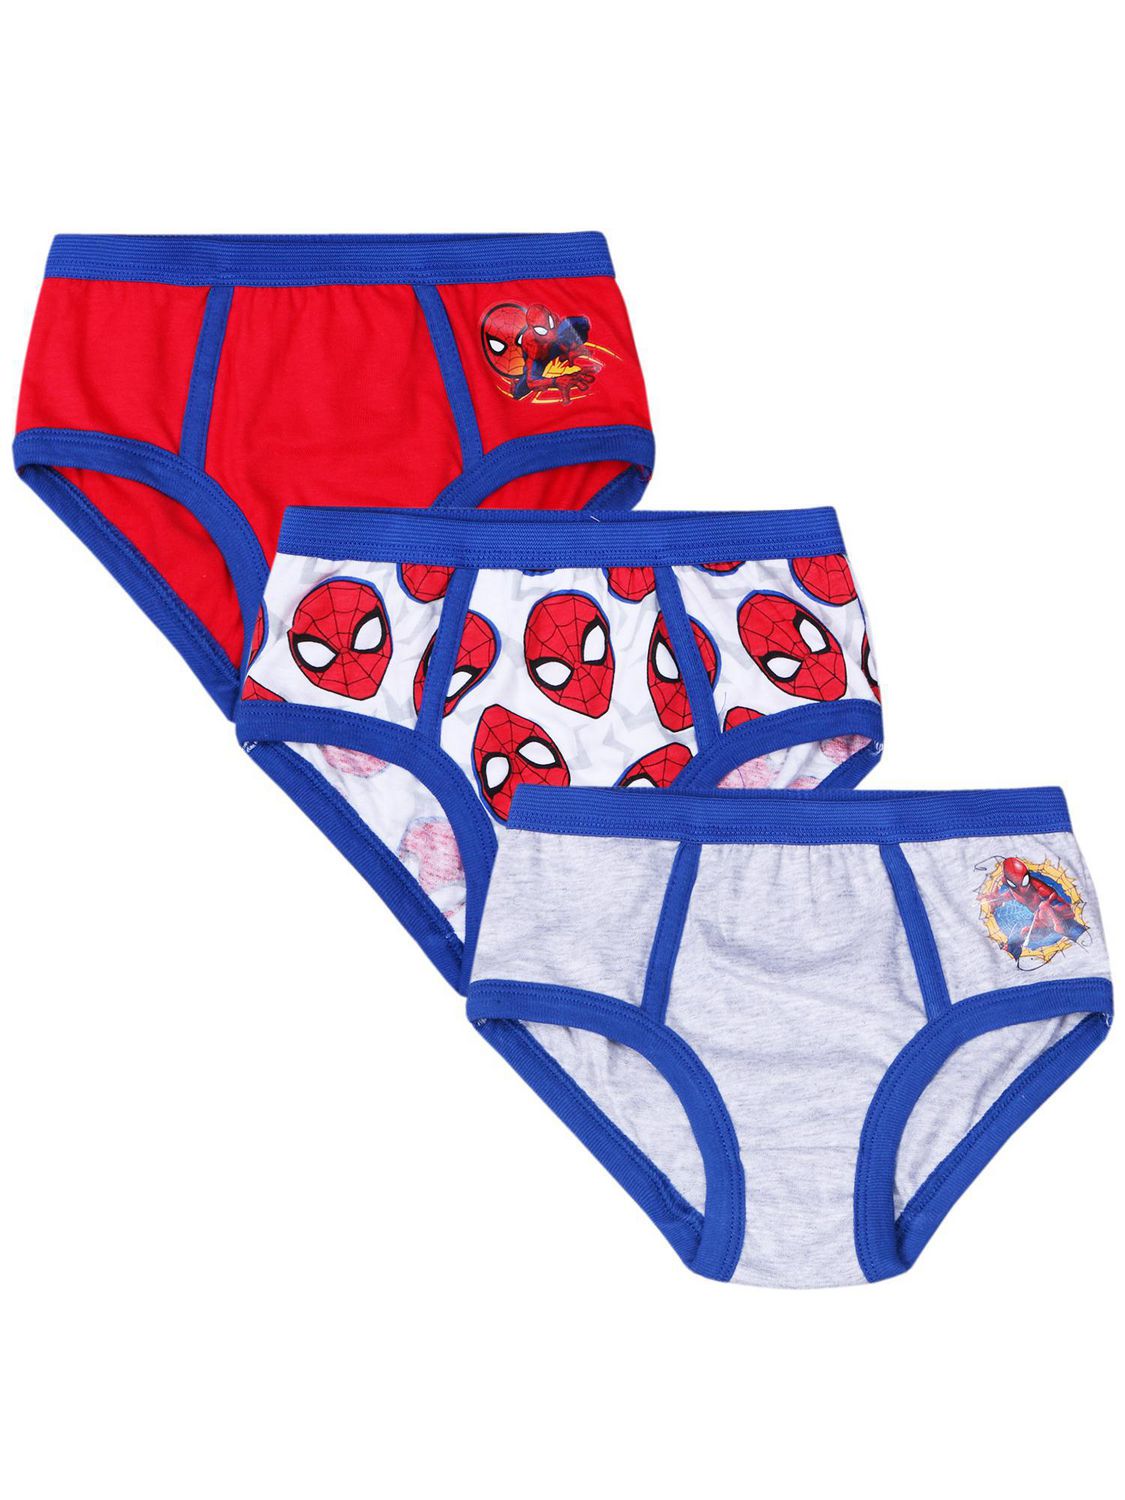 Spiderman three pack underwear for boys 